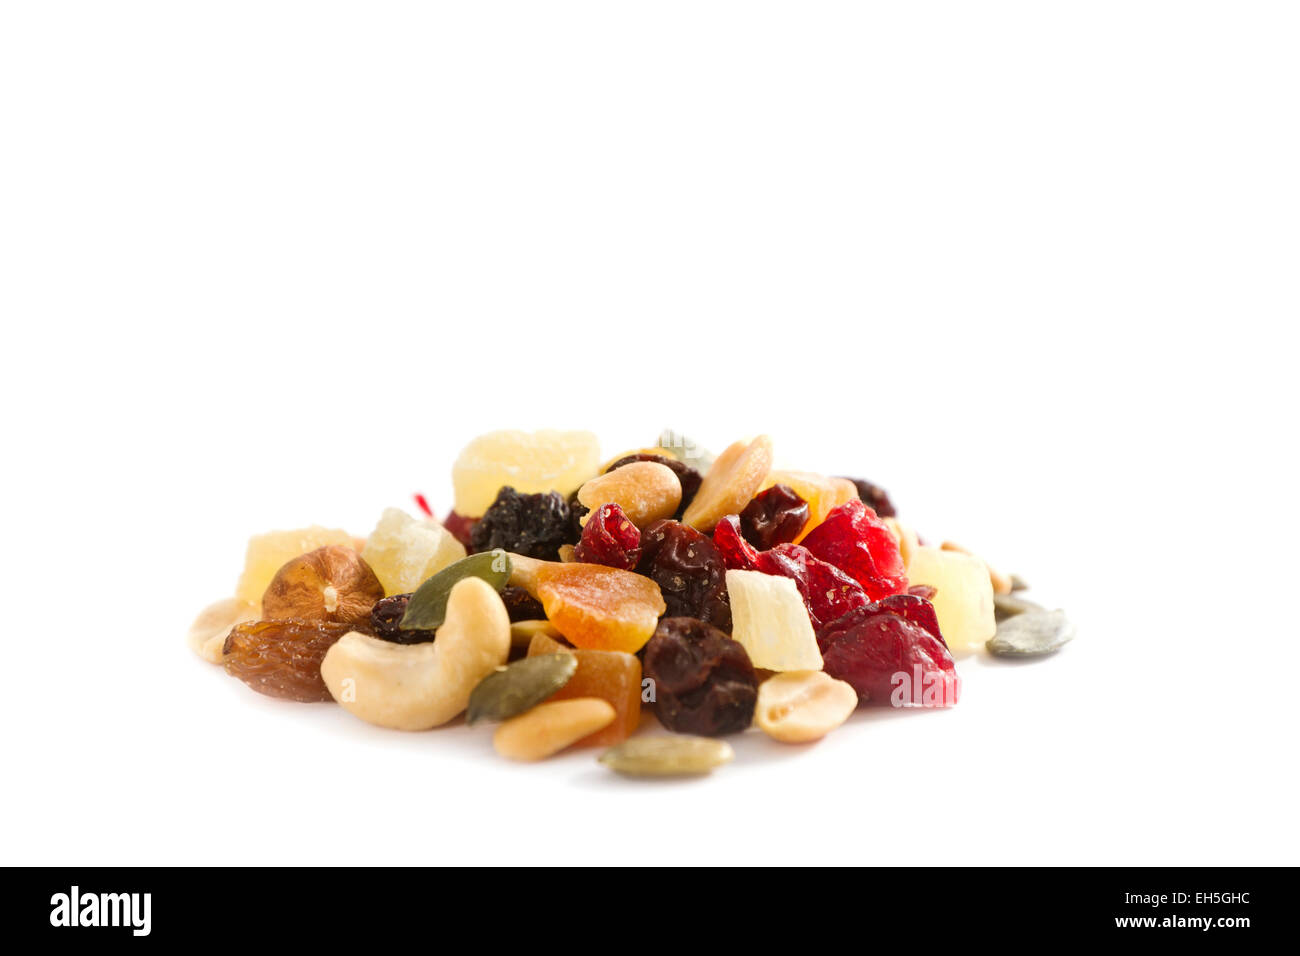 Une pile / heap de différentes noix et fruits séchés. Ingrédients pistaches, noix de cajou, les cacahuètes, les raisins secs, noisettes, tournesol s Banque D'Images